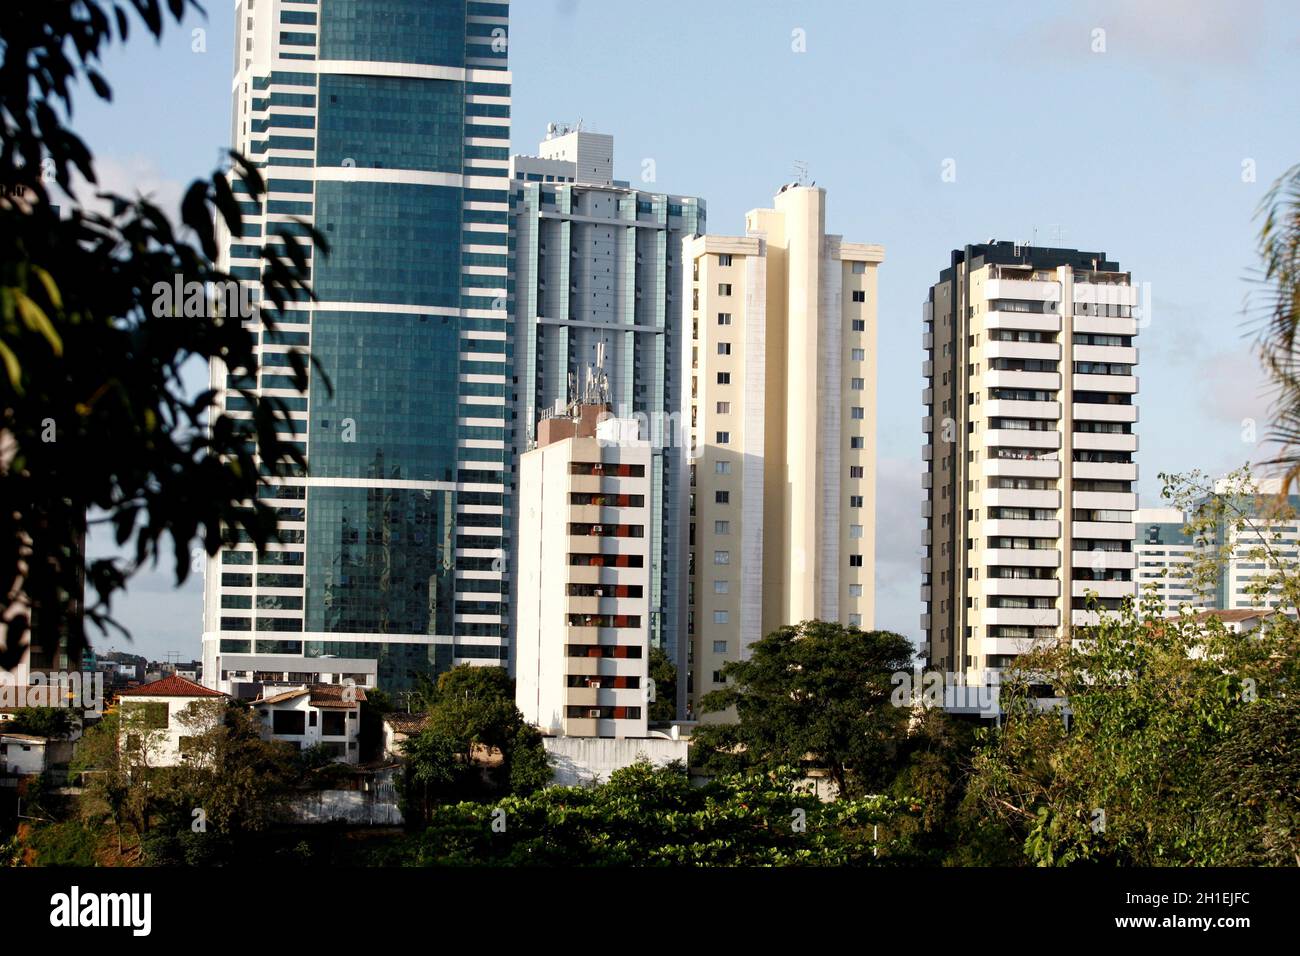 salvador, bahía / brasil - 29 de septiembre de 2016: Vista de edificios residenciales y comerciales en el barrio Caminho das Arvores en la ciudad de SAL Foto de stock